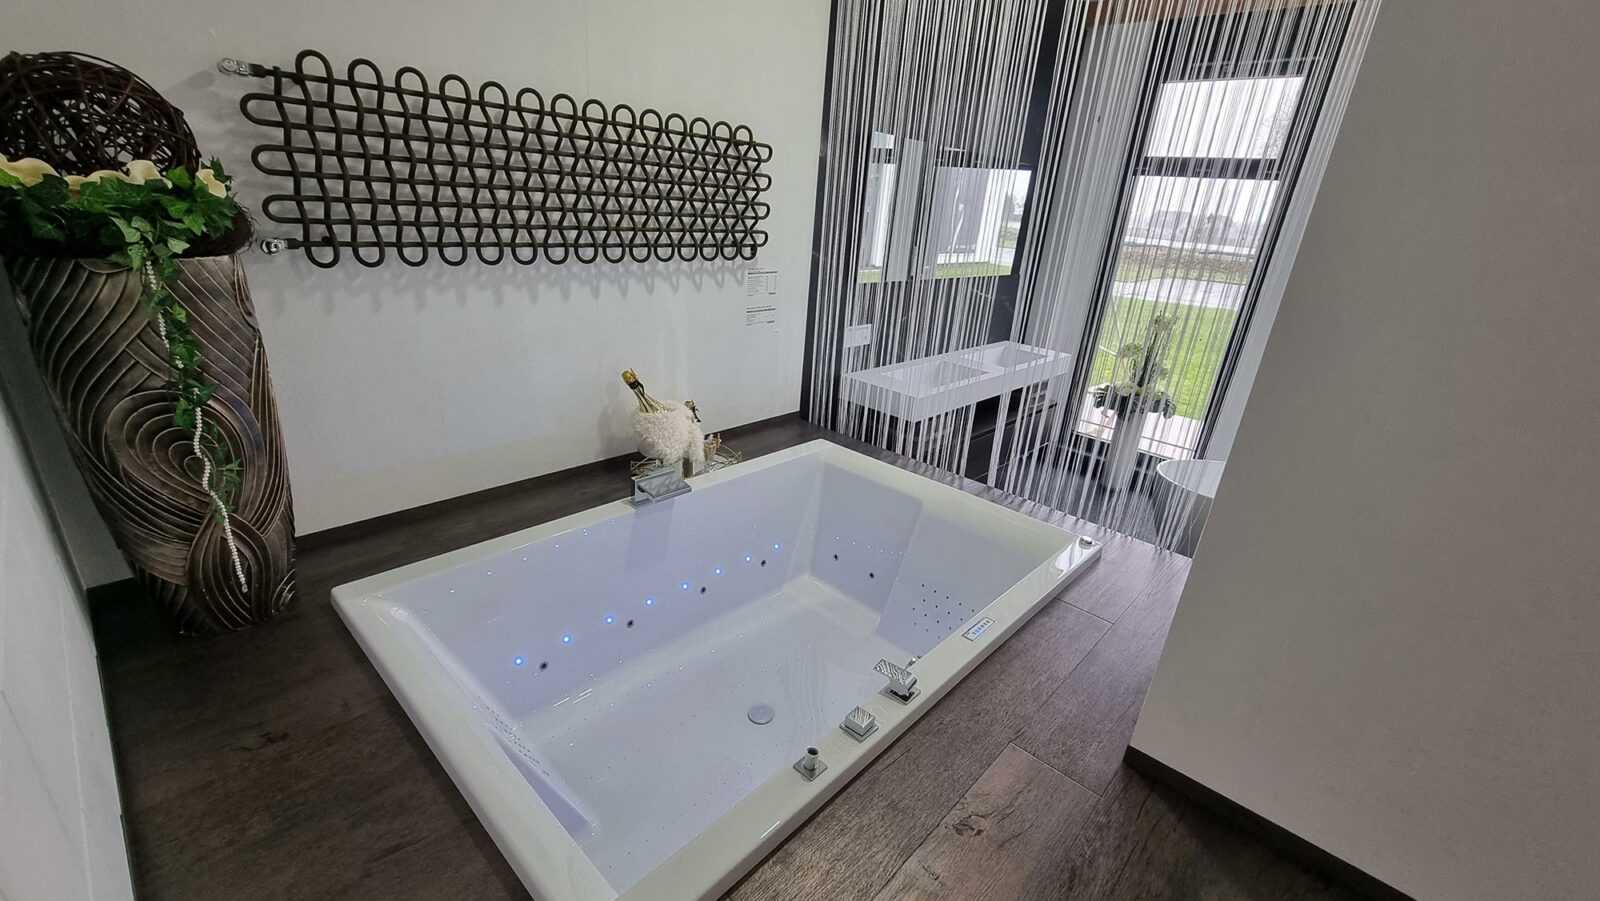 Erleben Sie Badmöbel in höchster Qualität: Erstklassige Badezimmerausstellung vor Ort.